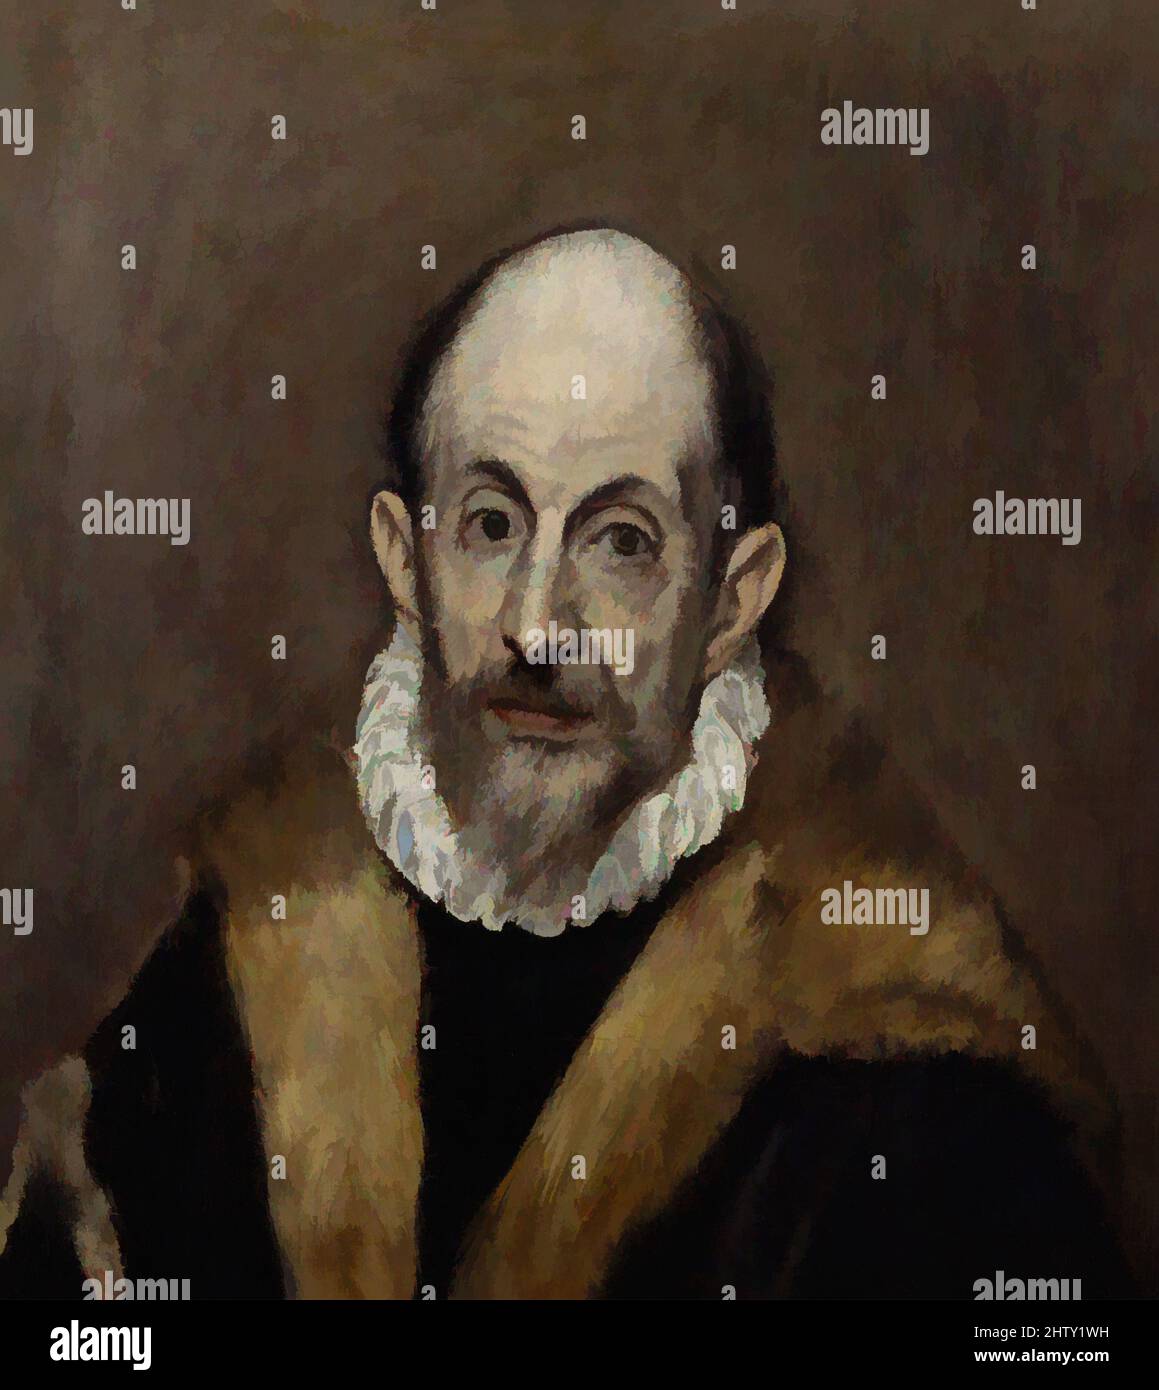 Arte ispirata dal Ritratto di un uomo Vecchio, ca. 1595–1600, olio su tela, 20 3/4 x 18 3/8 poll. (52,7 x 46,7 cm), dipinti, El Greco (Domenikos Theotokopoulos) (Greco, Iráklion (Candia) 1540/41–1614 Toledo), i ritratti candidi di El Greco sono stati costantemente ammirati per il loro naturalismo e, opere classiche modernizzate da Artotop con un tuffo di modernità. Forme, colore e valore, impatto visivo accattivante sulle emozioni artistiche attraverso la libertà delle opere d'arte in modo contemporaneo. Un messaggio senza tempo che persegue una nuova direzione selvaggiamente creativa. Artisti che si rivolgono al supporto digitale e creano l'NFT Artotop Foto Stock